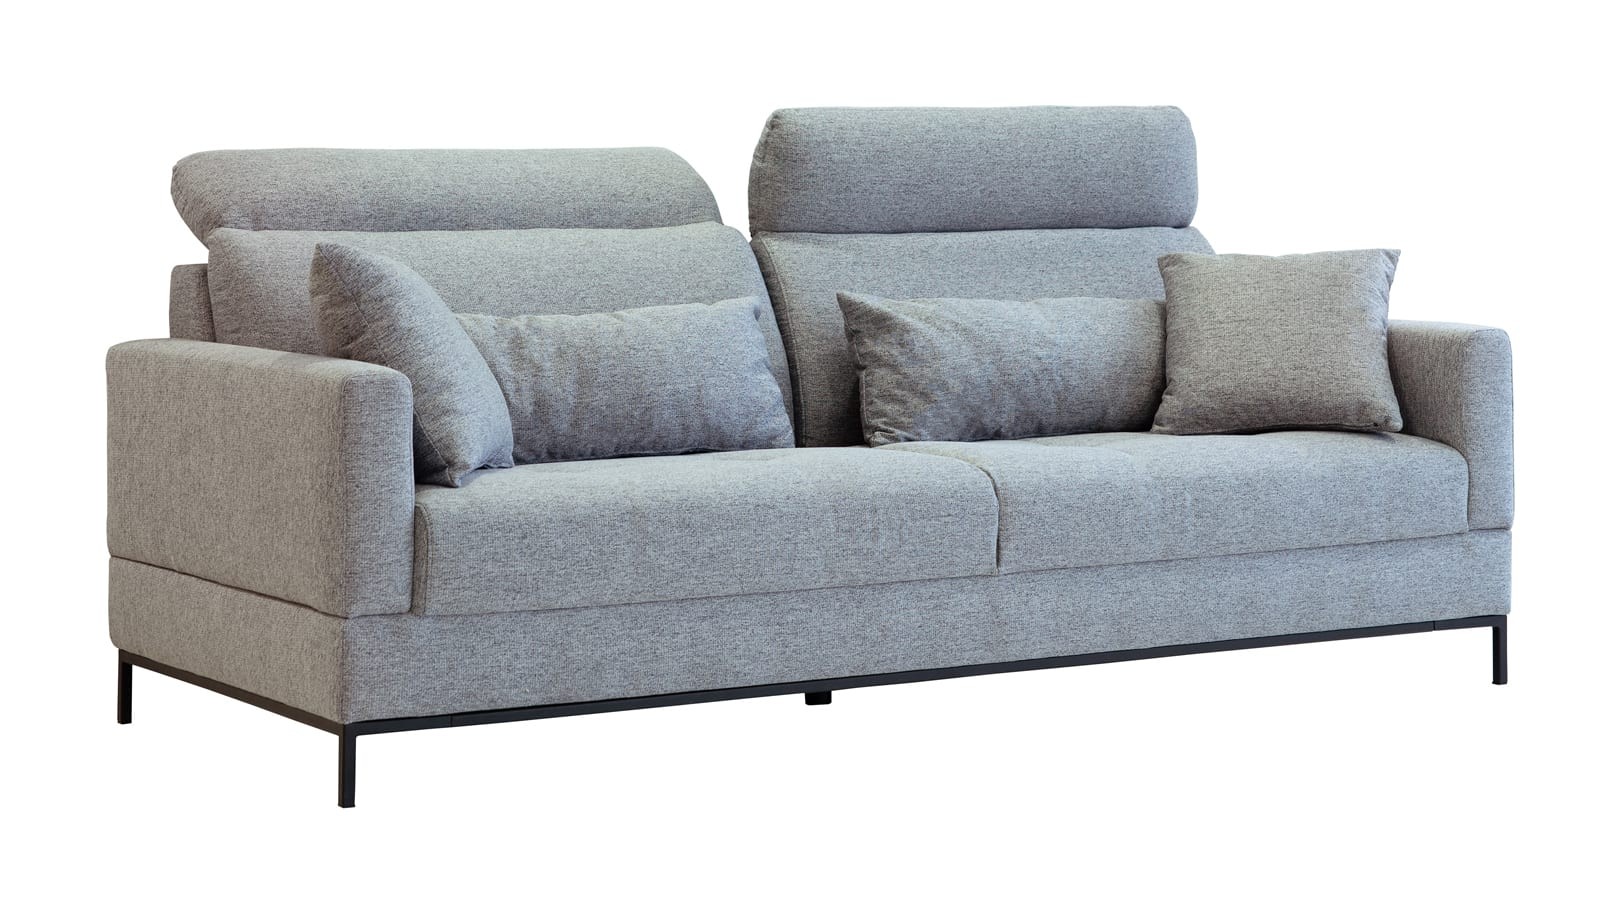 Canapé 3 places avec têtières en tissu gris anthracite